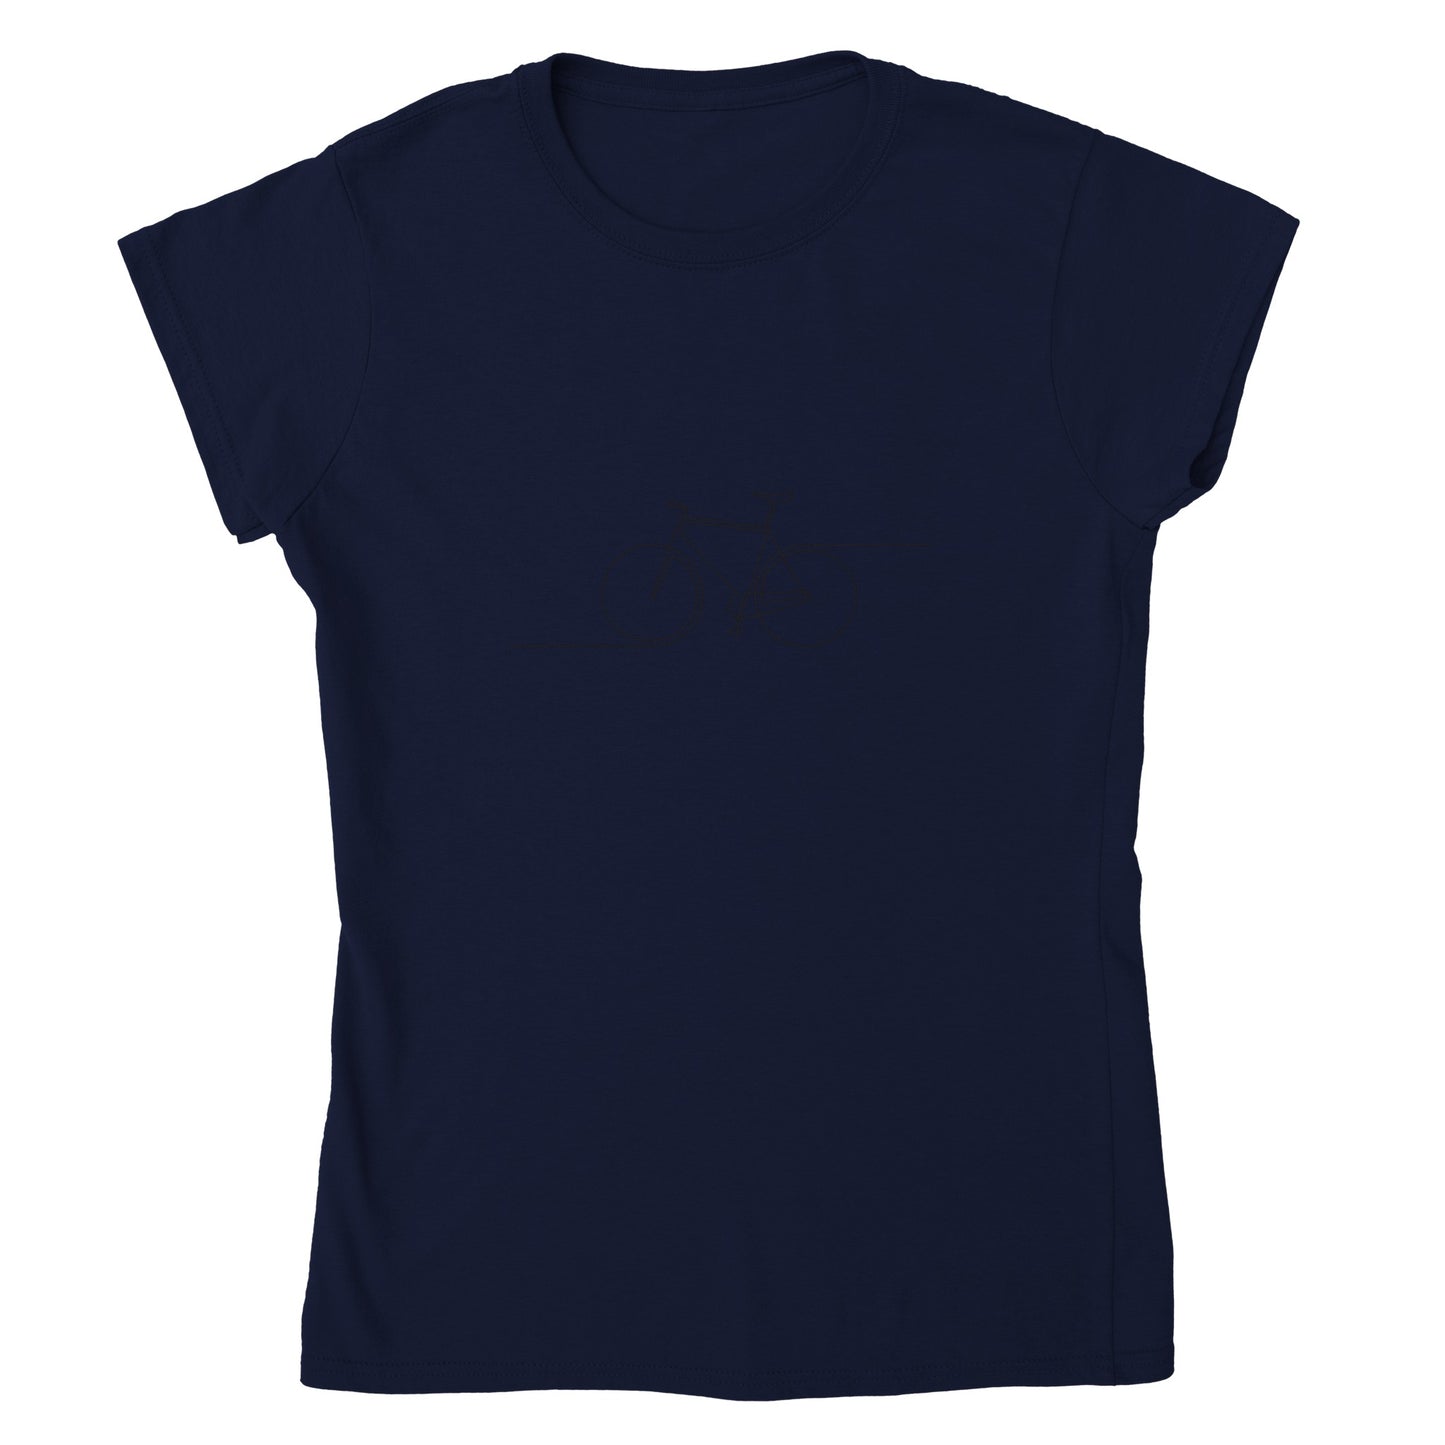 Minimalist Womens Crewneck T-shirt